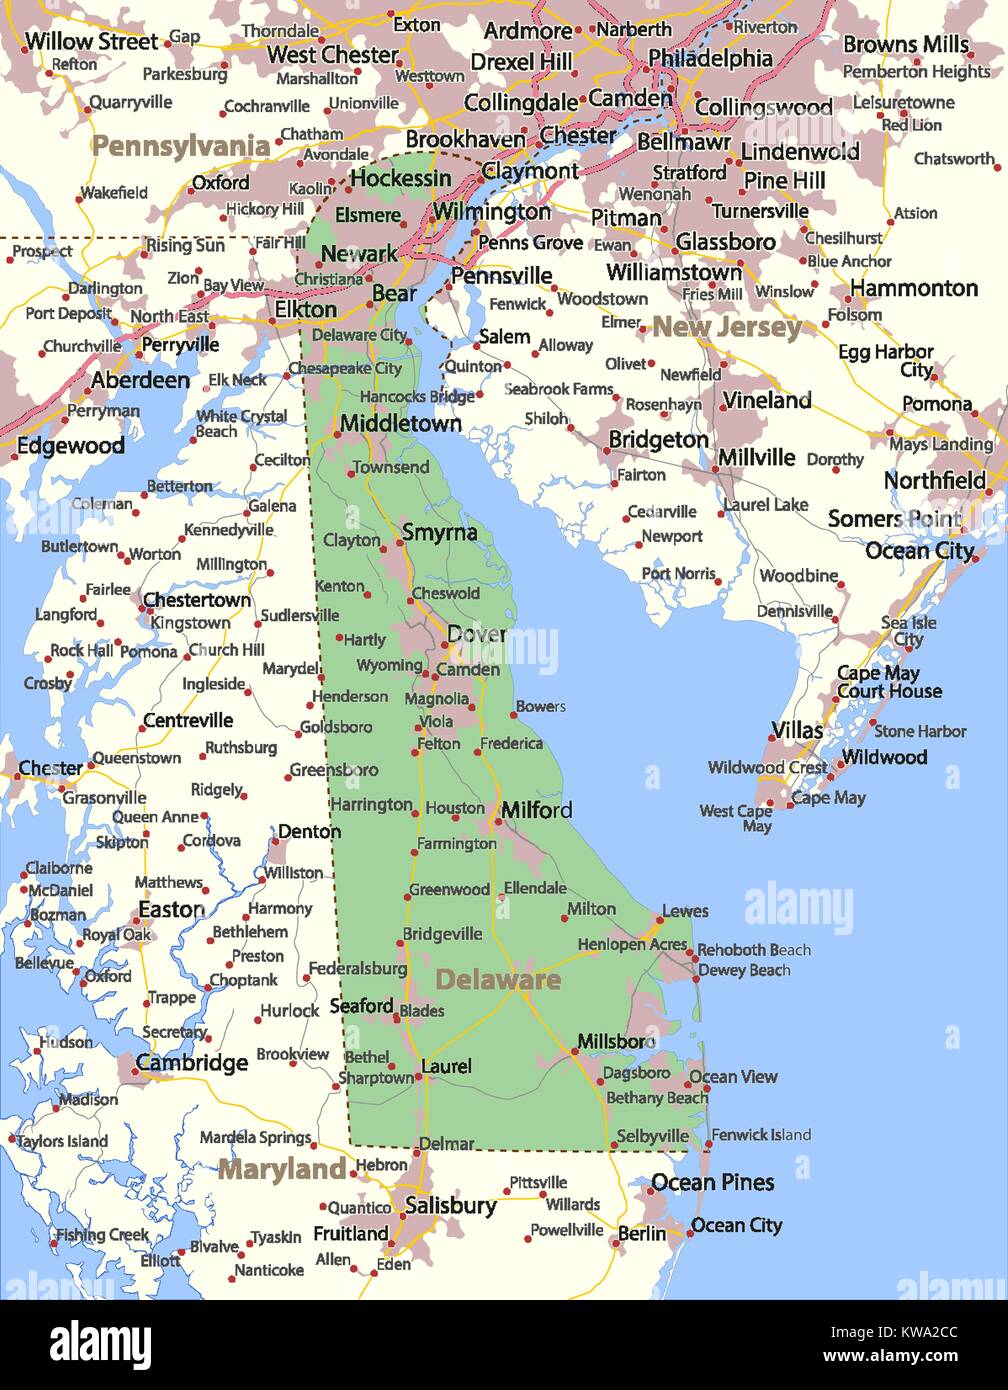 Mappa di Delaware. Mostra i confini, zone urbane, nomi di località, strade e autostrade. Proiezione: proiezione di Mercatore. Illustrazione Vettoriale